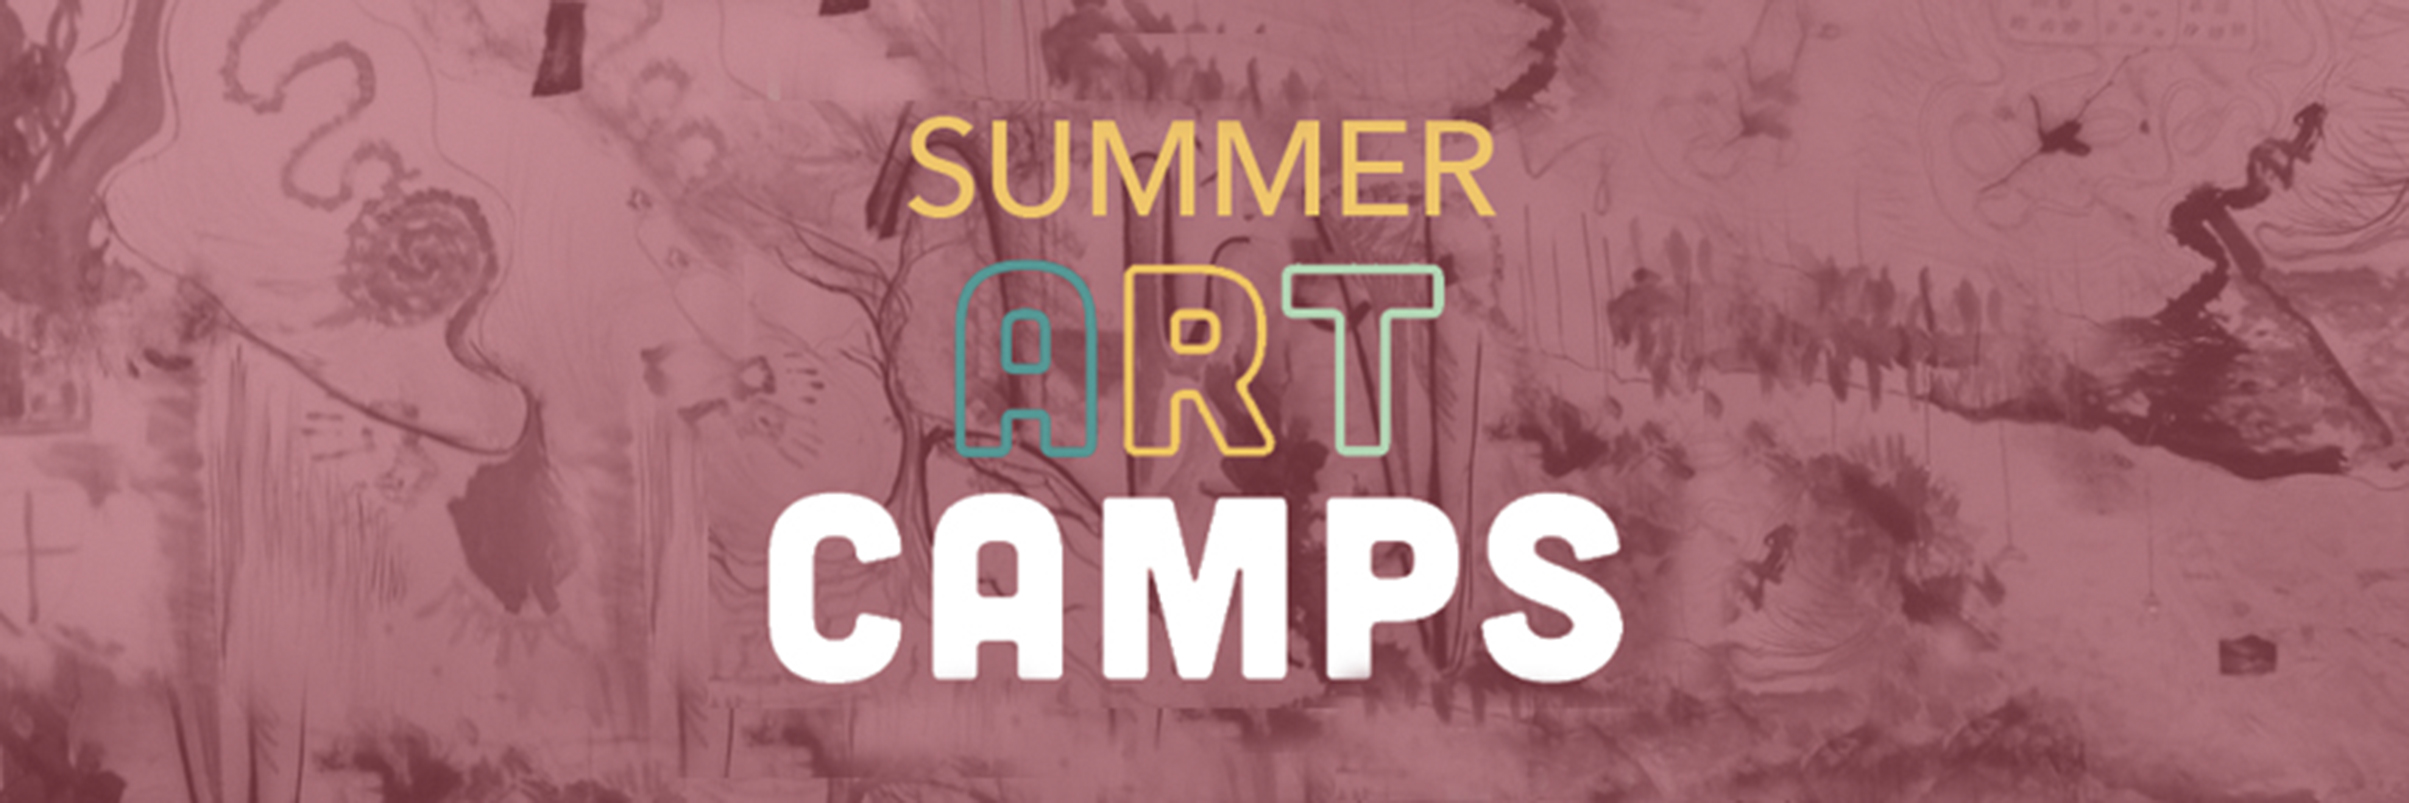 Summer art camps